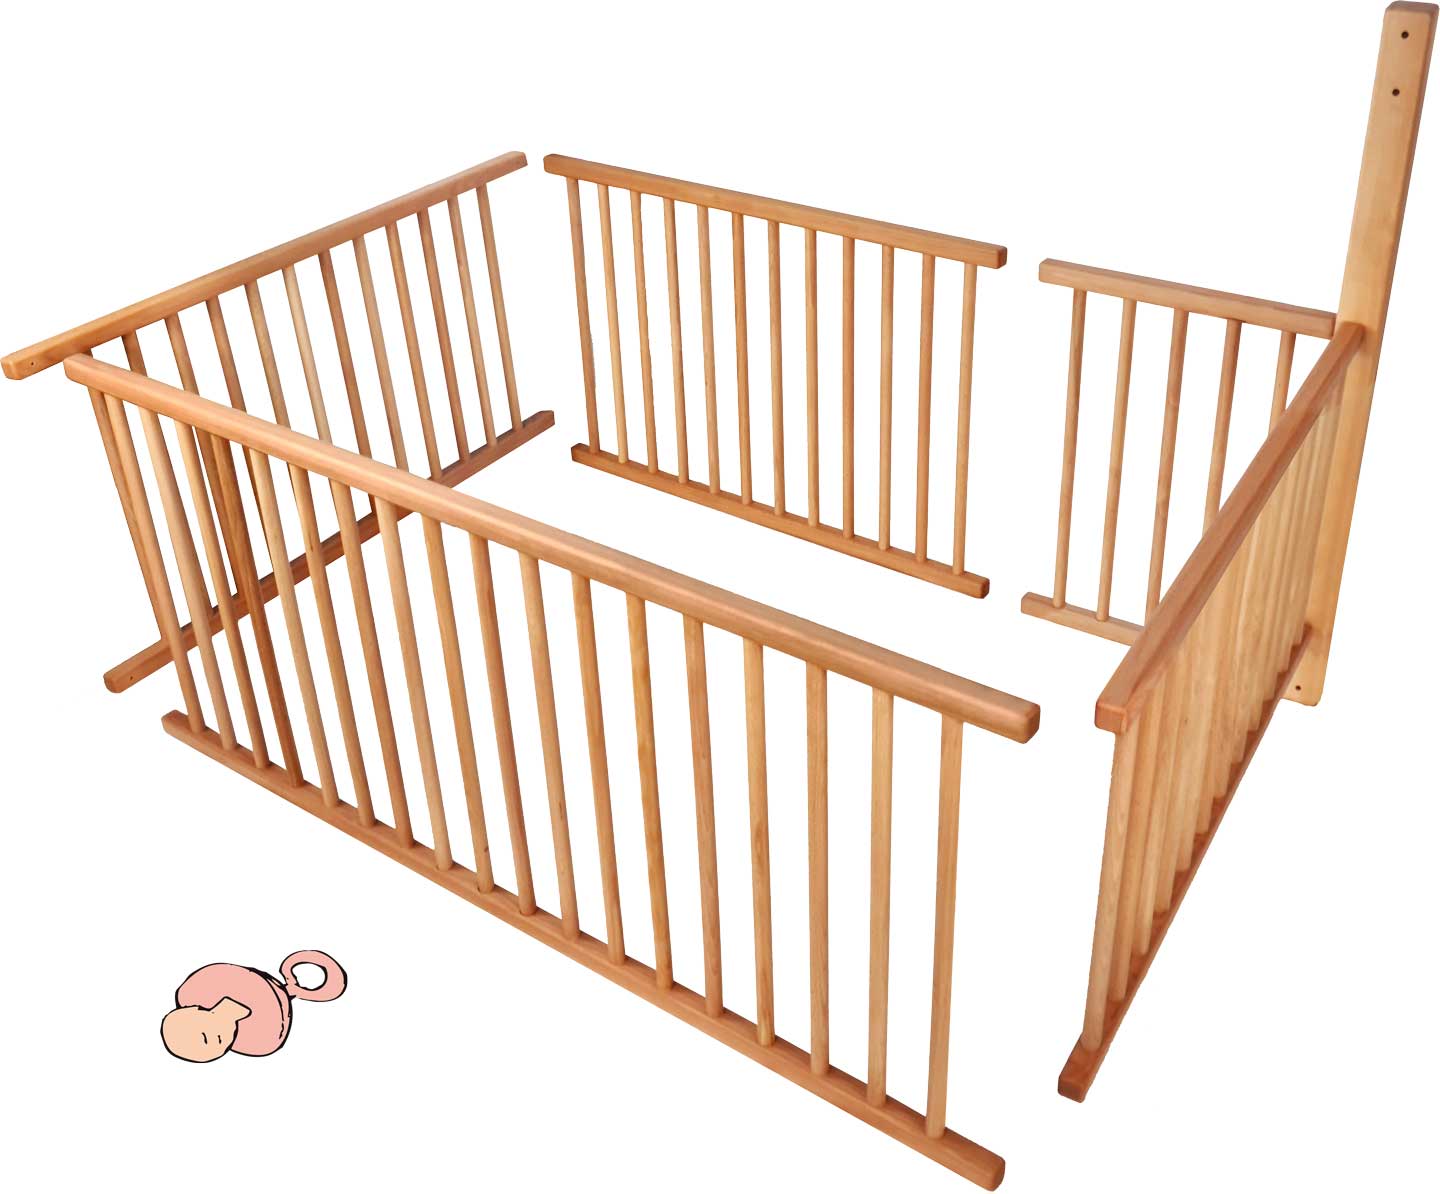 Bērnu režģa komplekts divstāvu gultai ar standarta kājām (196 cm) un kāpņu pozīciju A 3/4 no guļus virsmas, t.sk., papildus nepieciešamā sija**